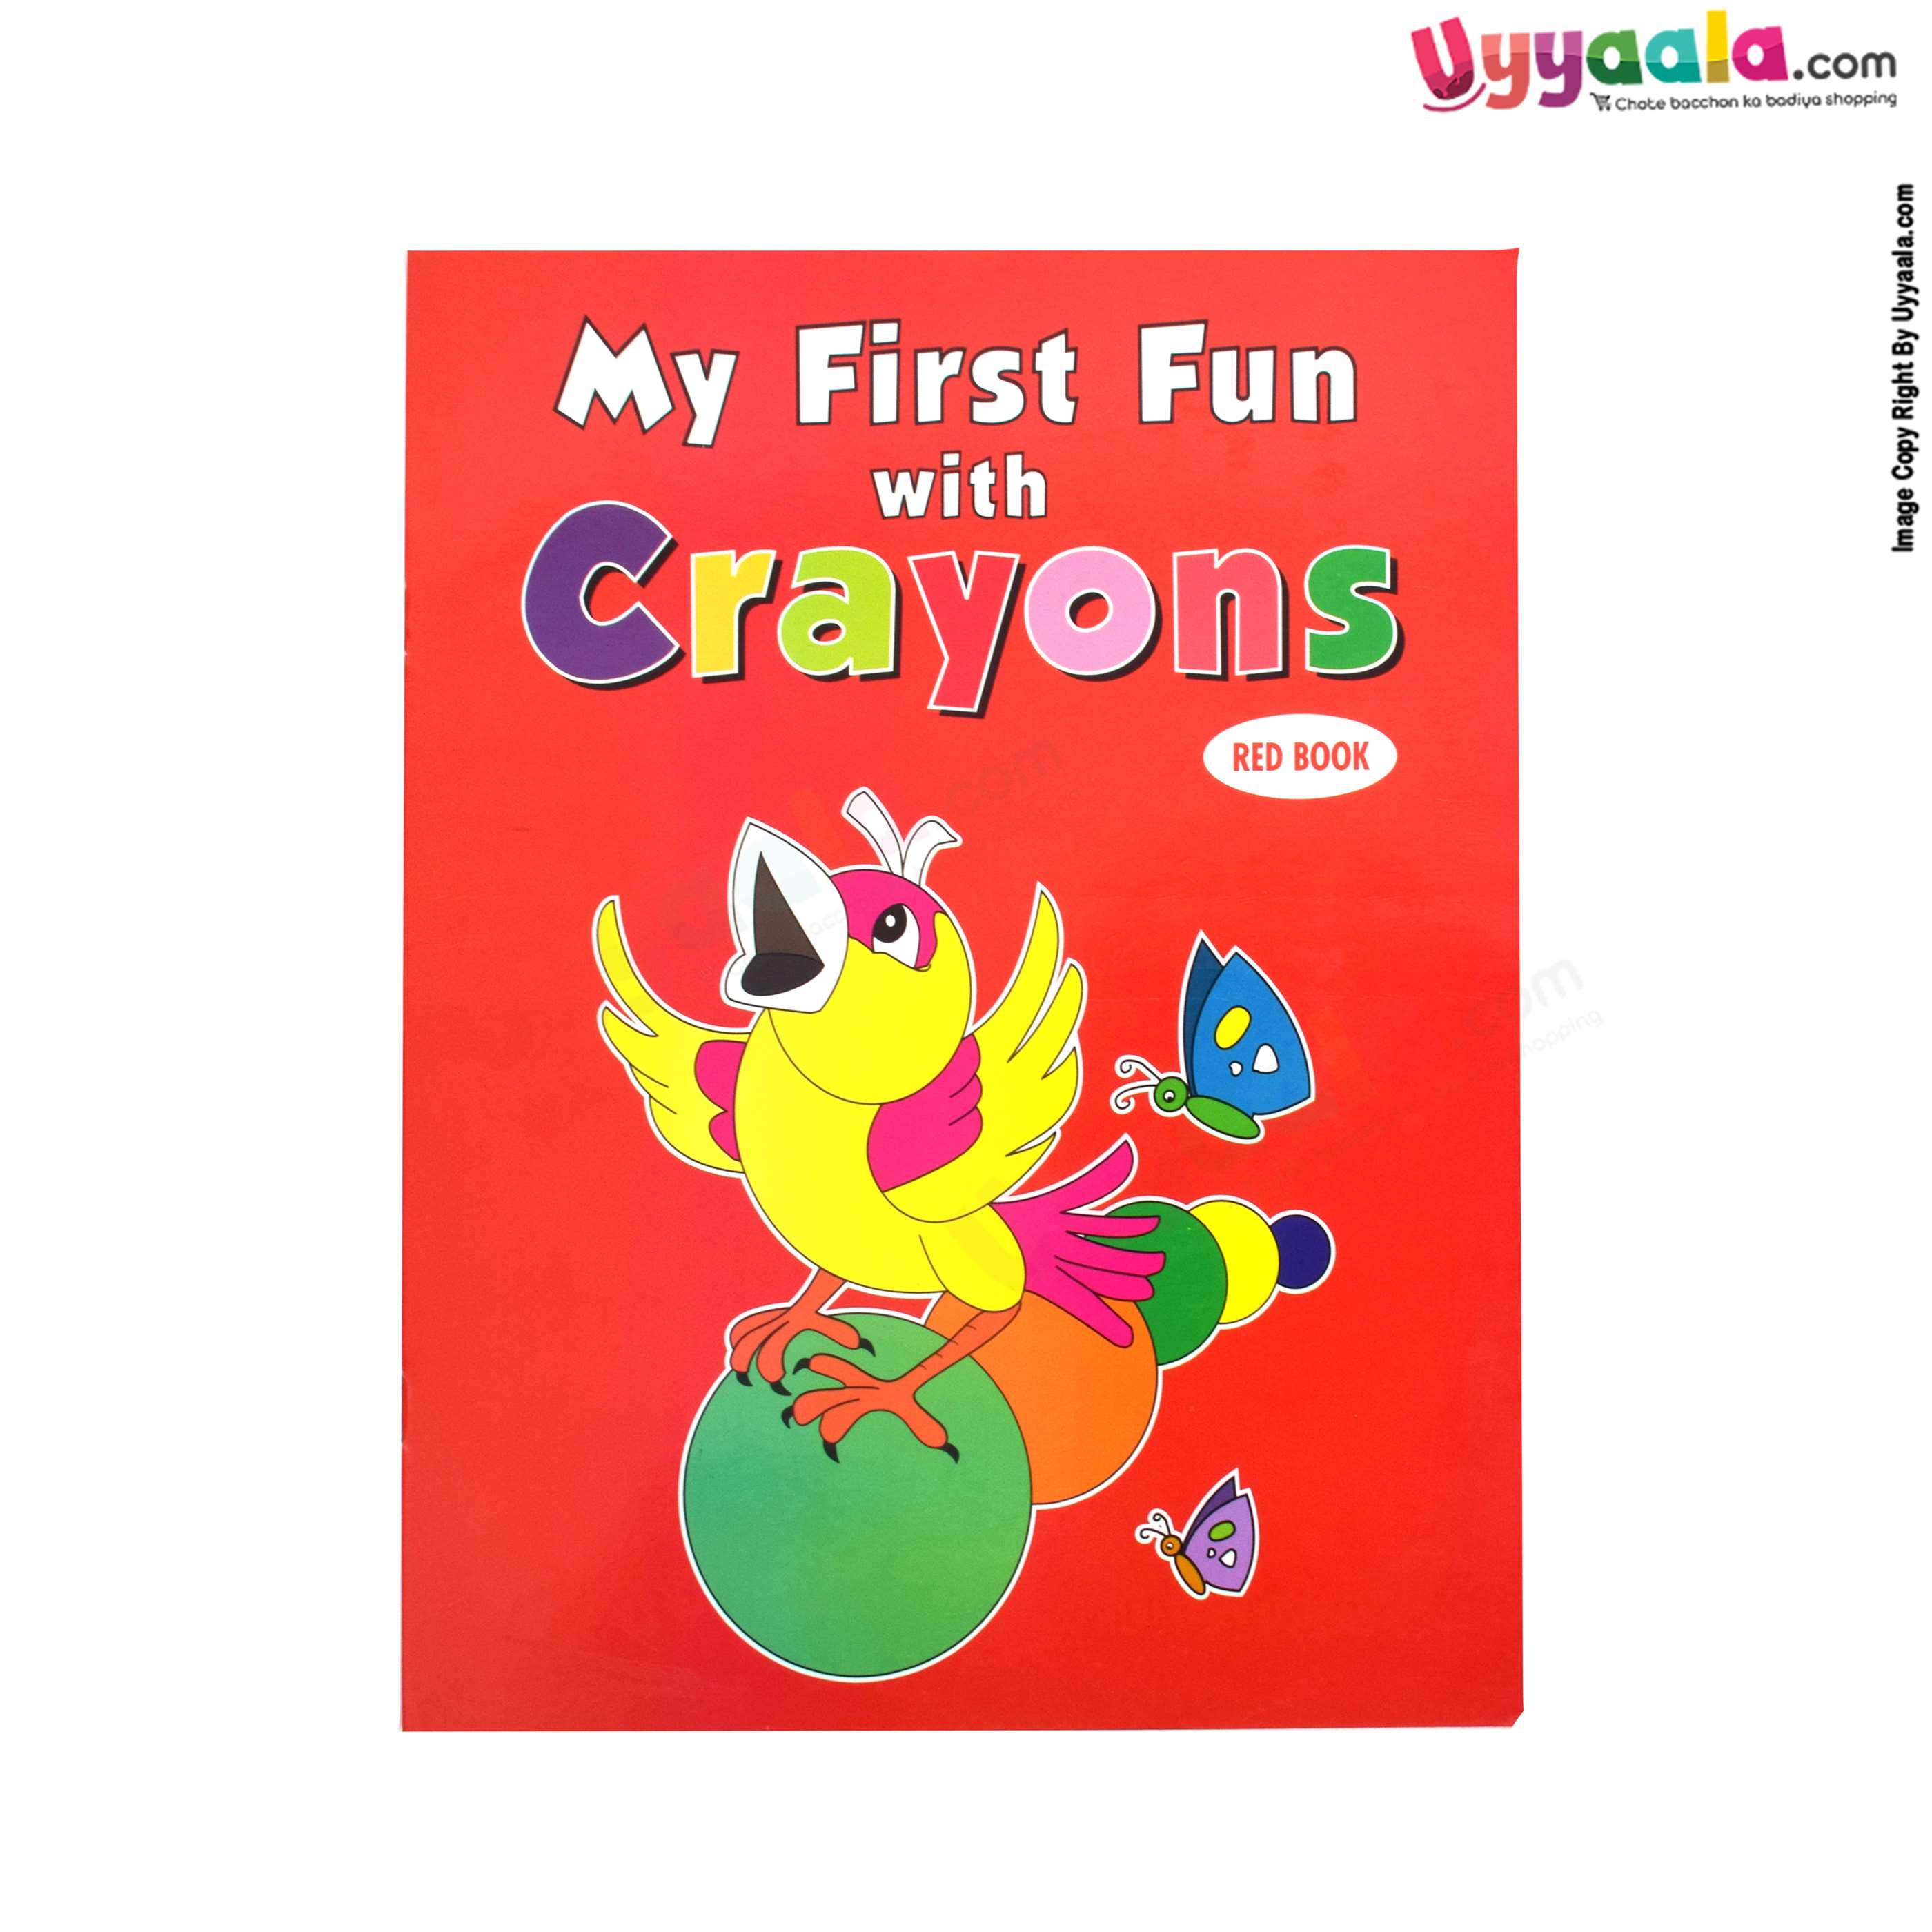 Fun books for kids